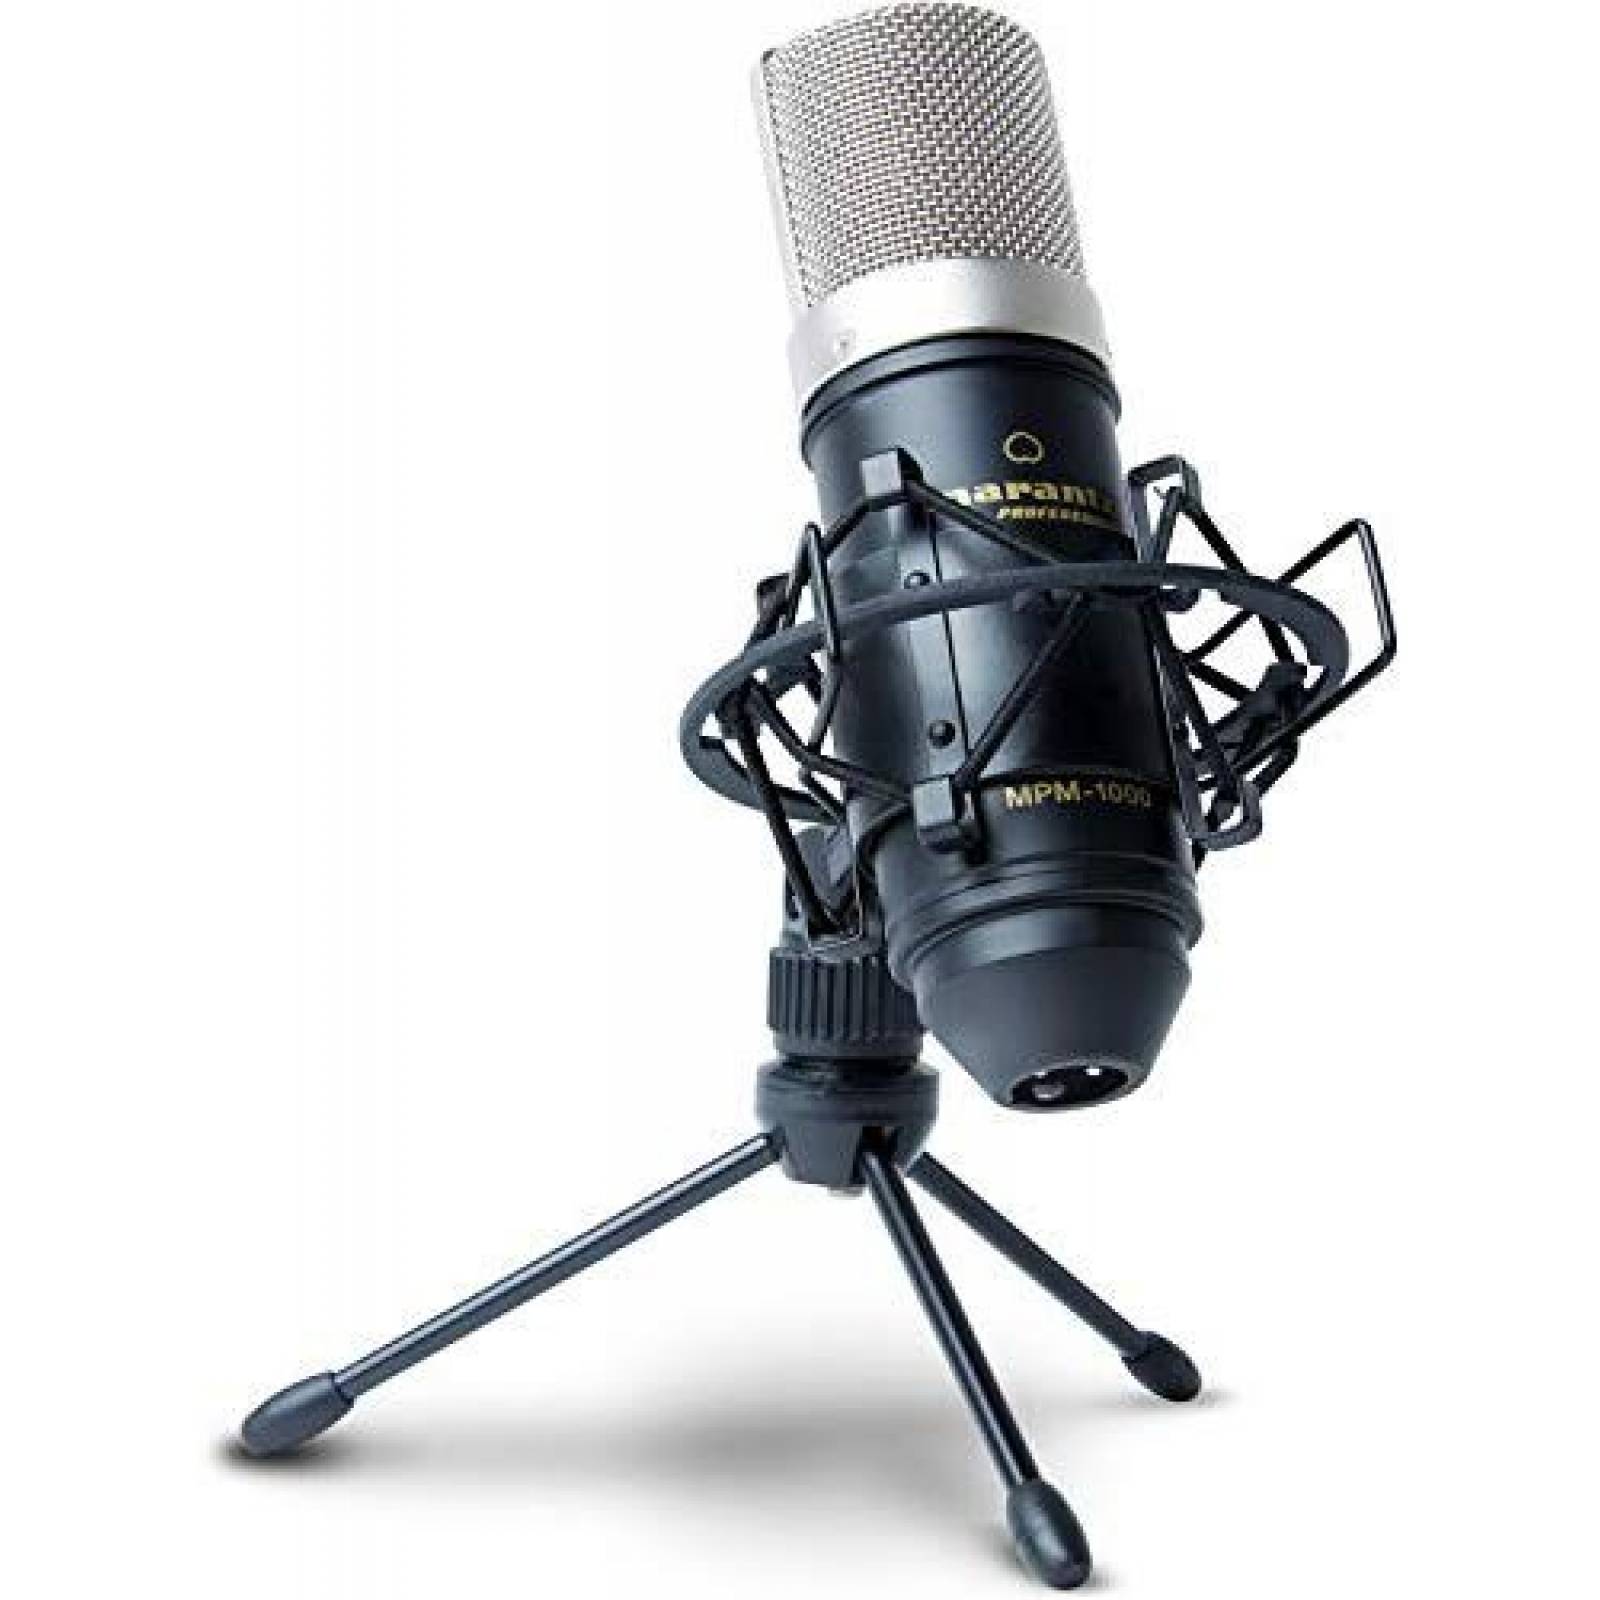 Kit de micrófono condensador Marantz Professional y soporte